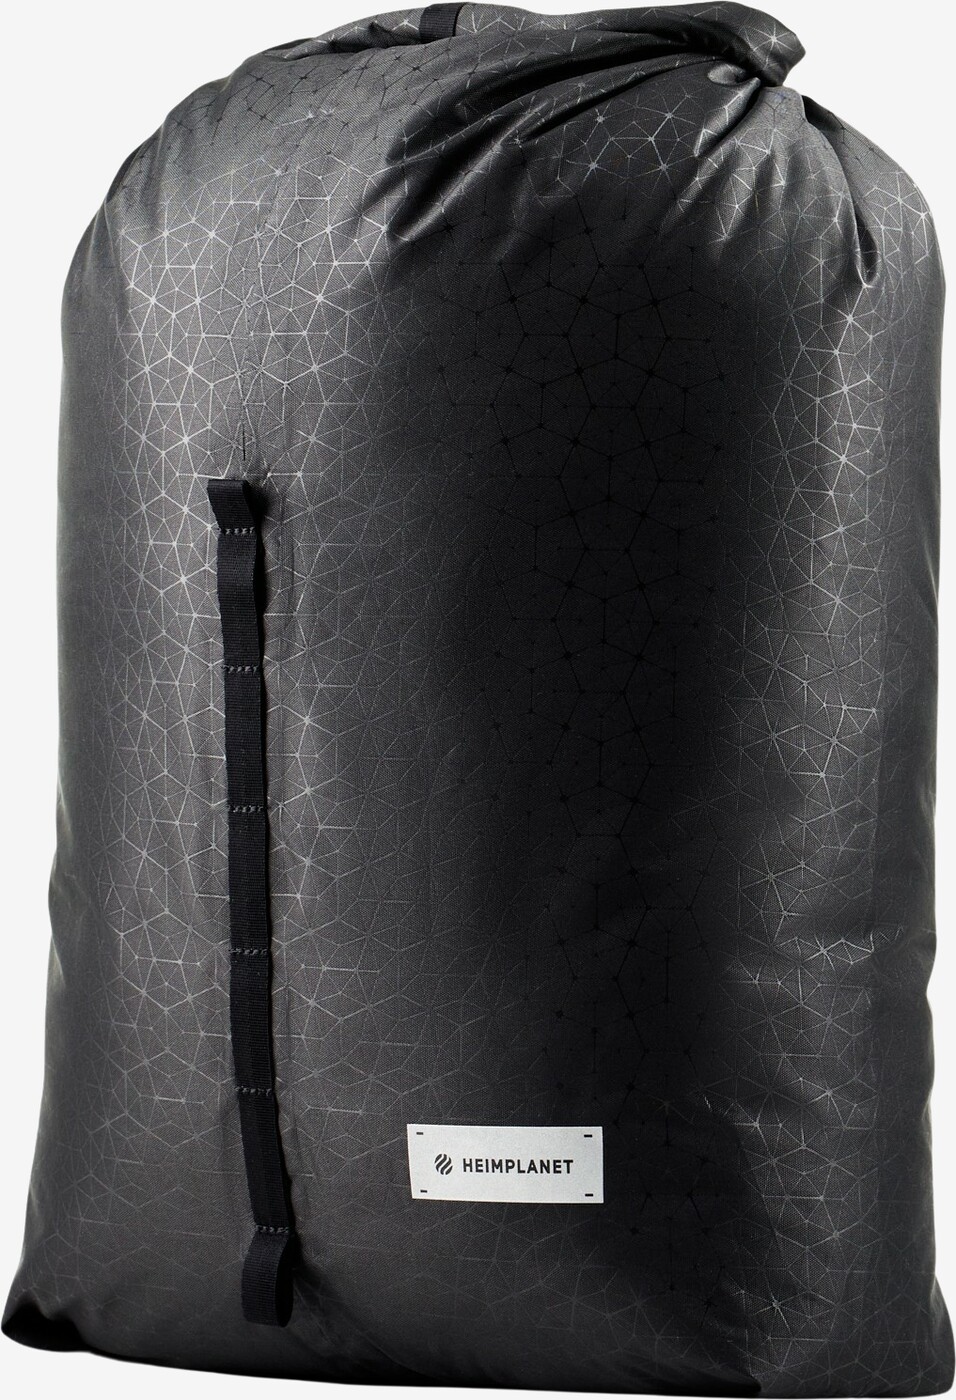 Heimplanet - Carry Essentials Kit Bag V2 (Sort)